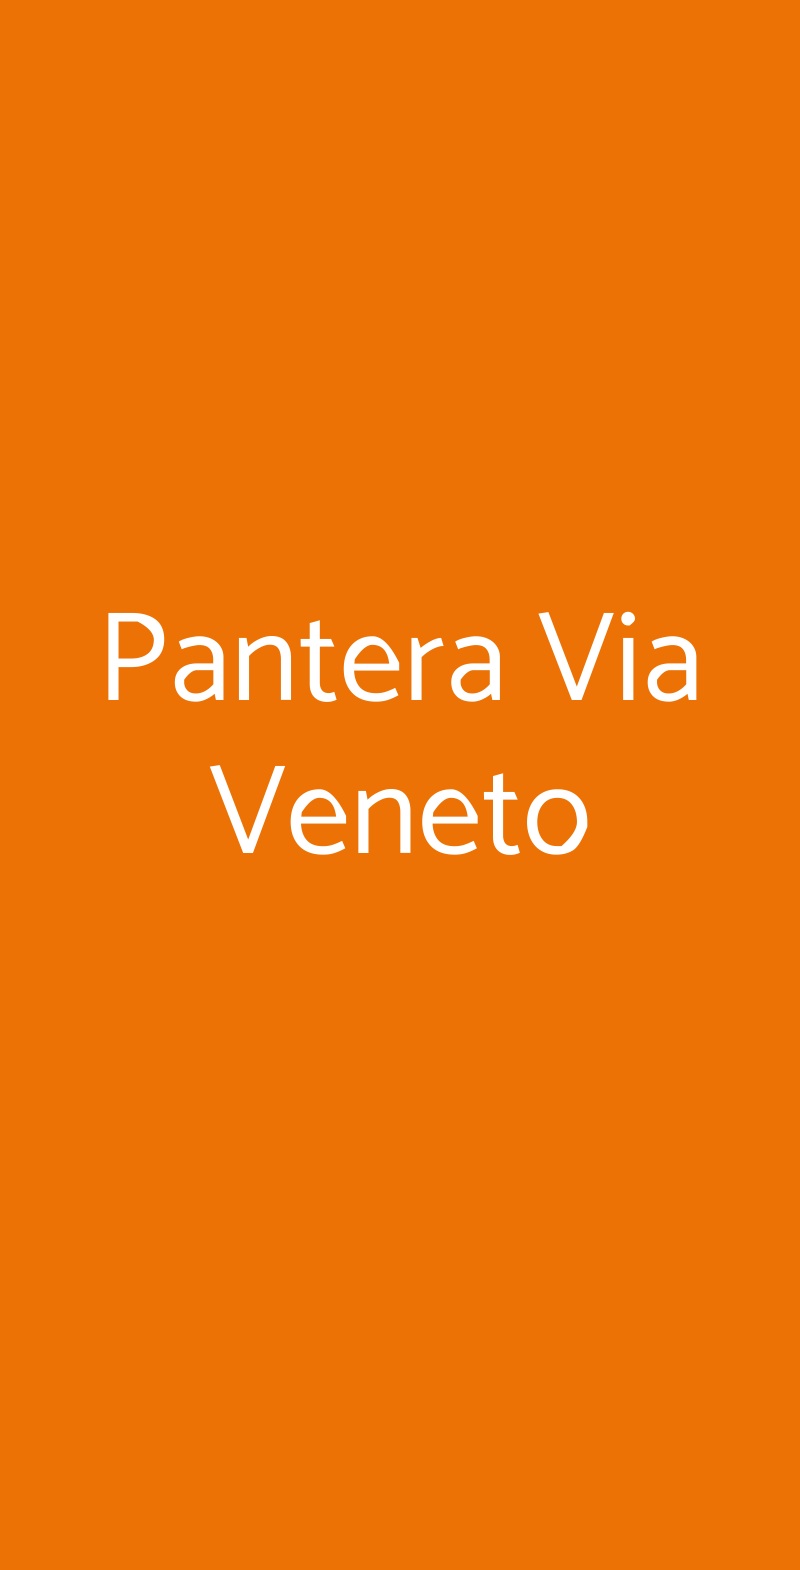 Pantera Via Veneto Oristano menù 1 pagina